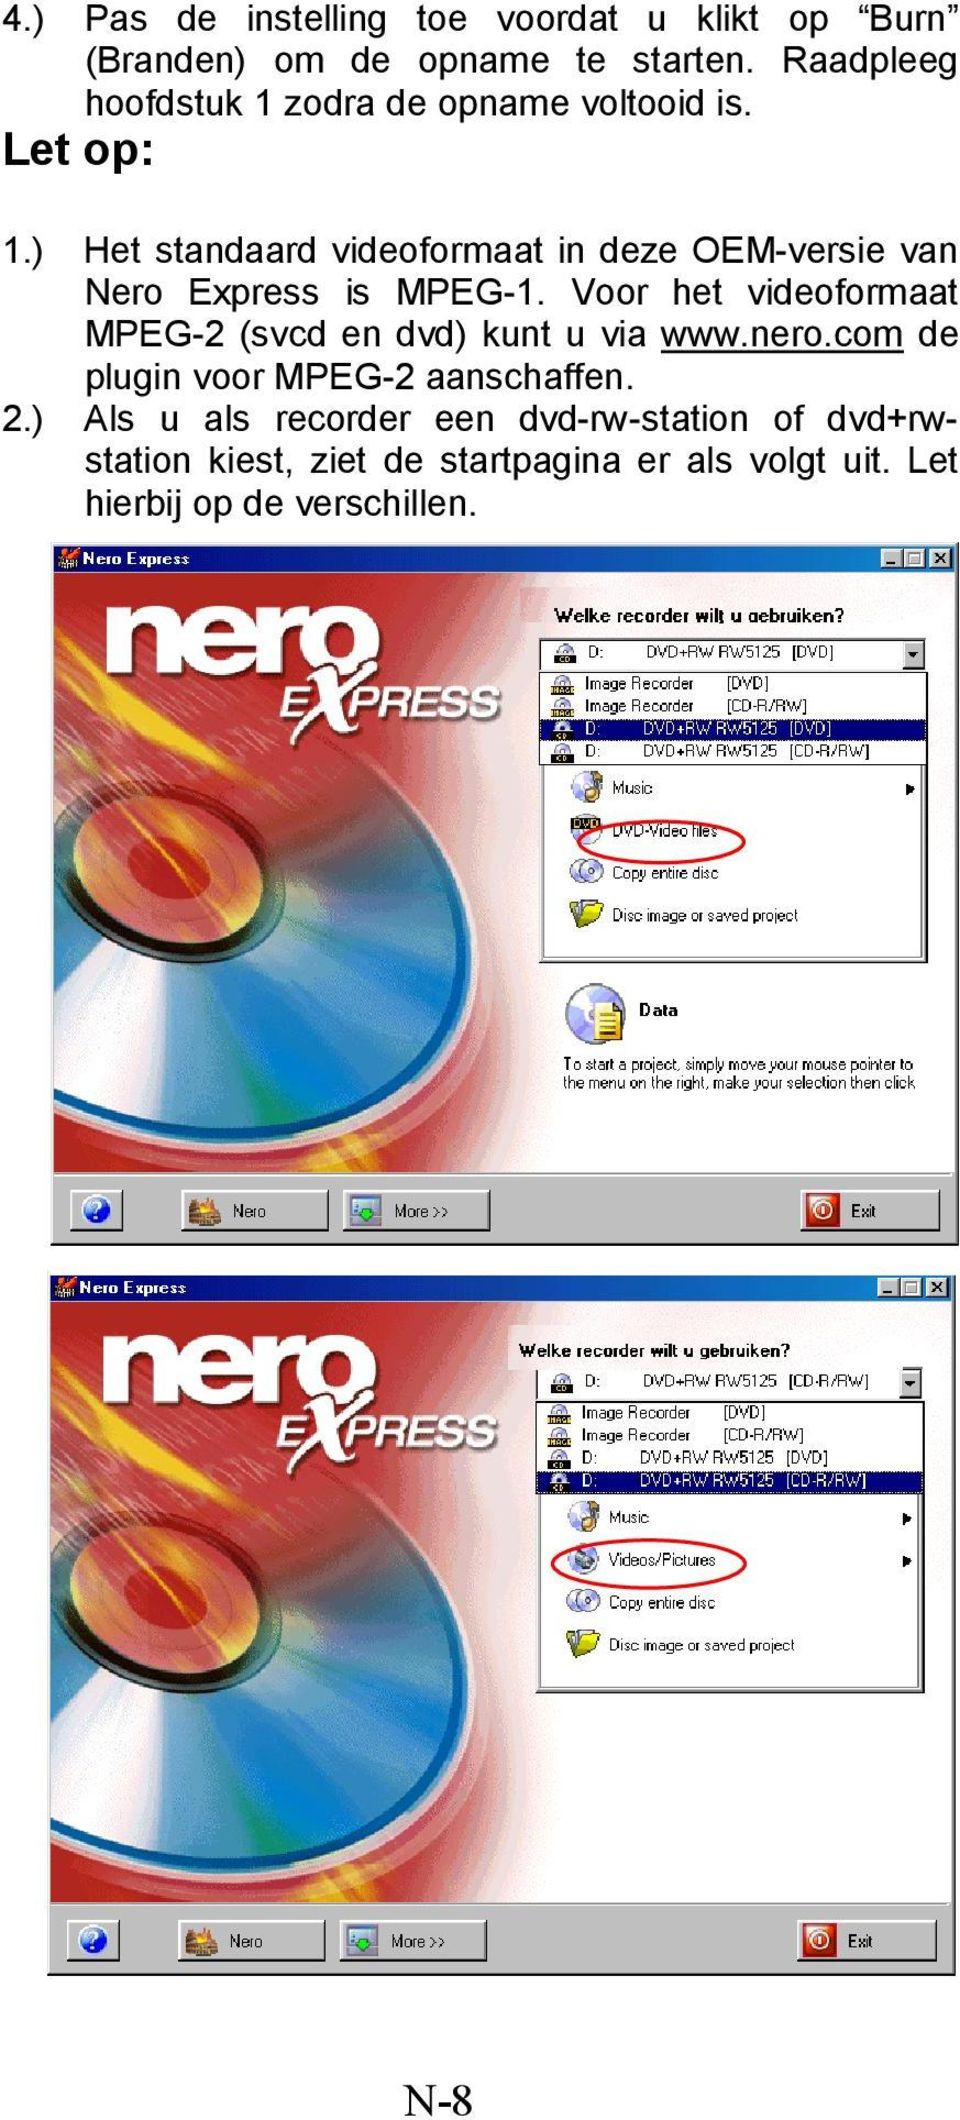 ) Het standaard videoformaat in deze OEM-versie van Nero Express is MPEG-1.